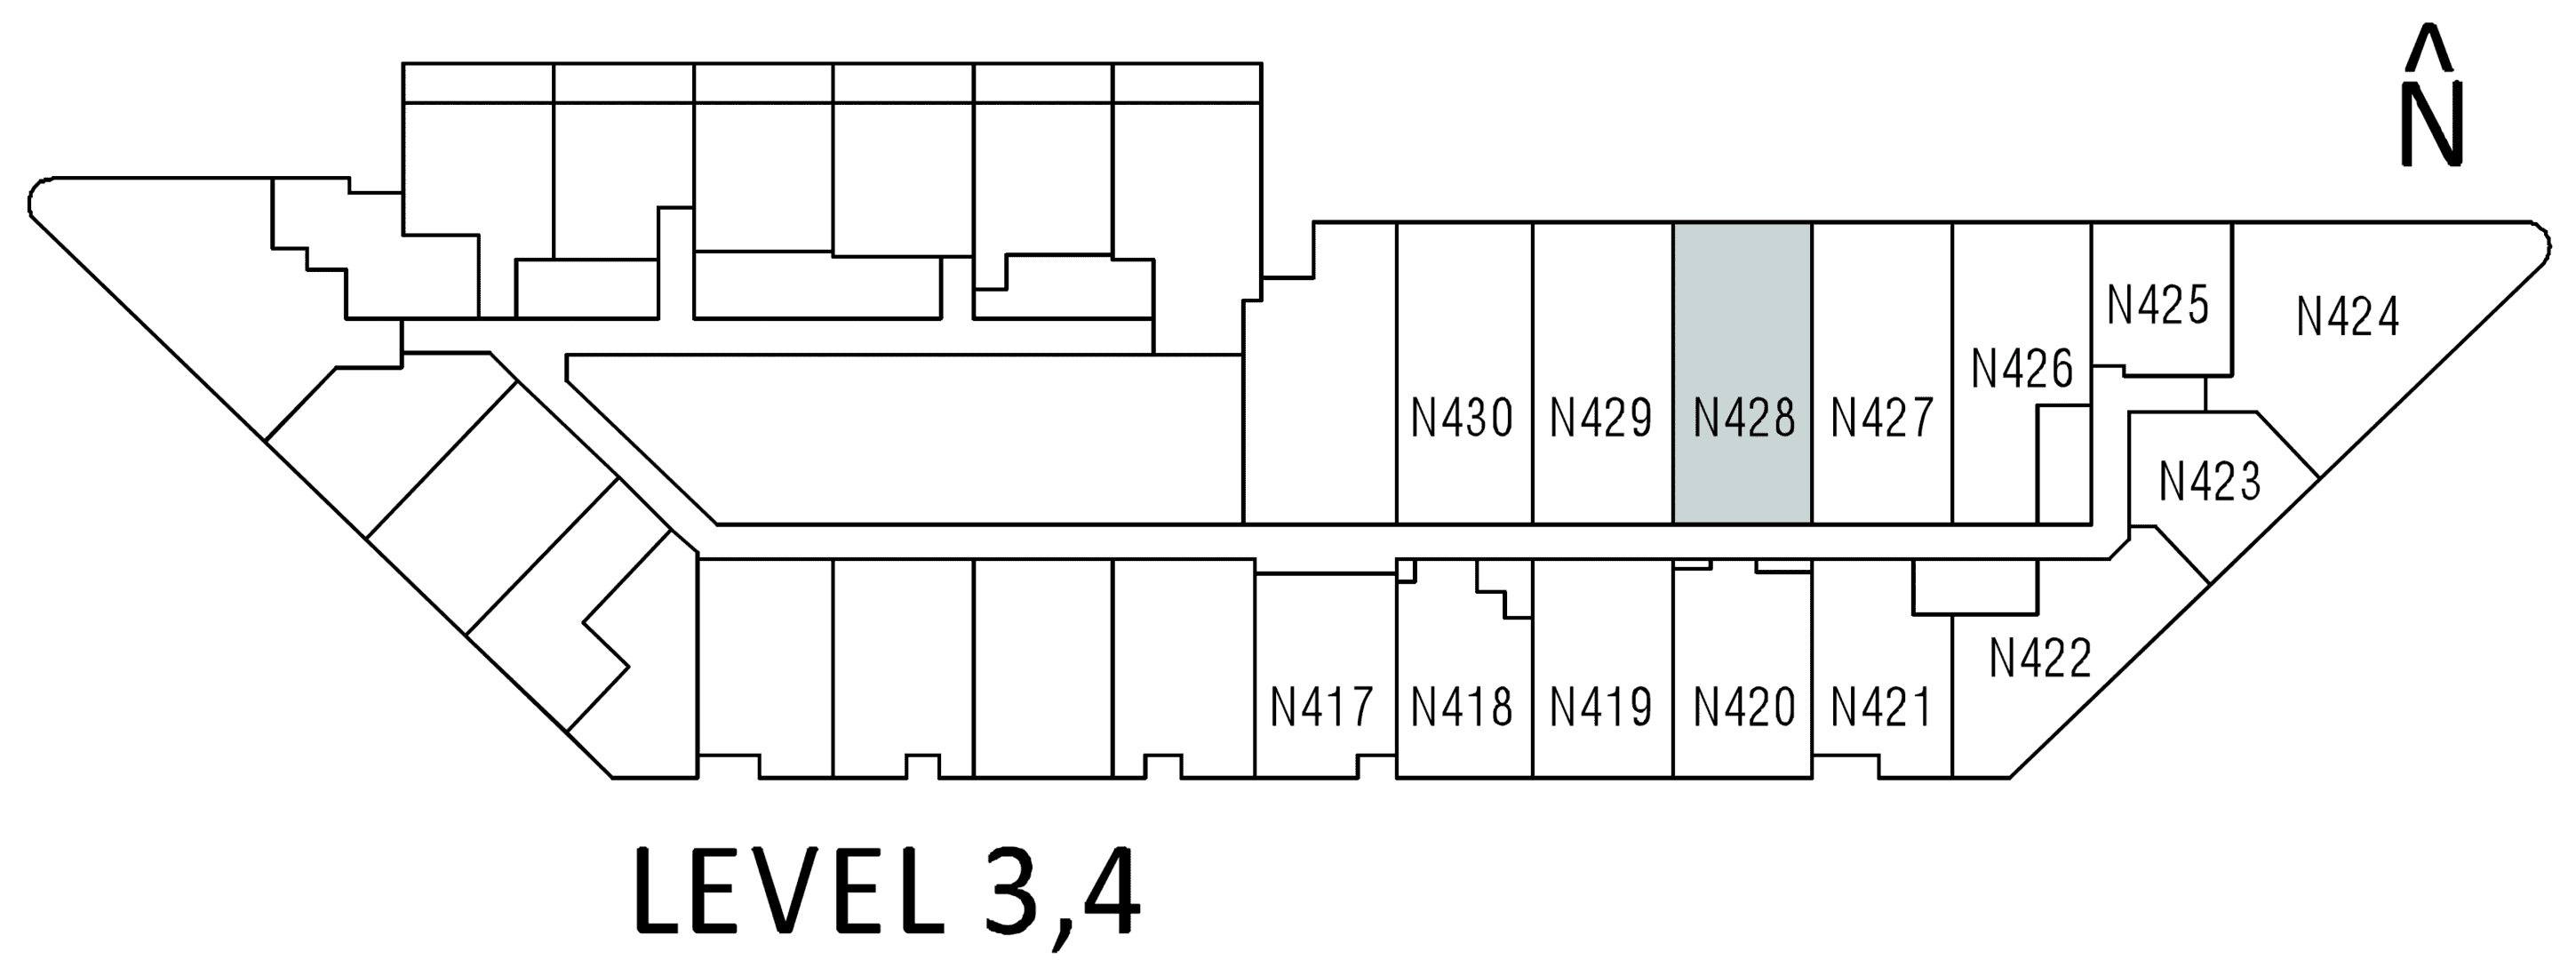 N329 floor plan